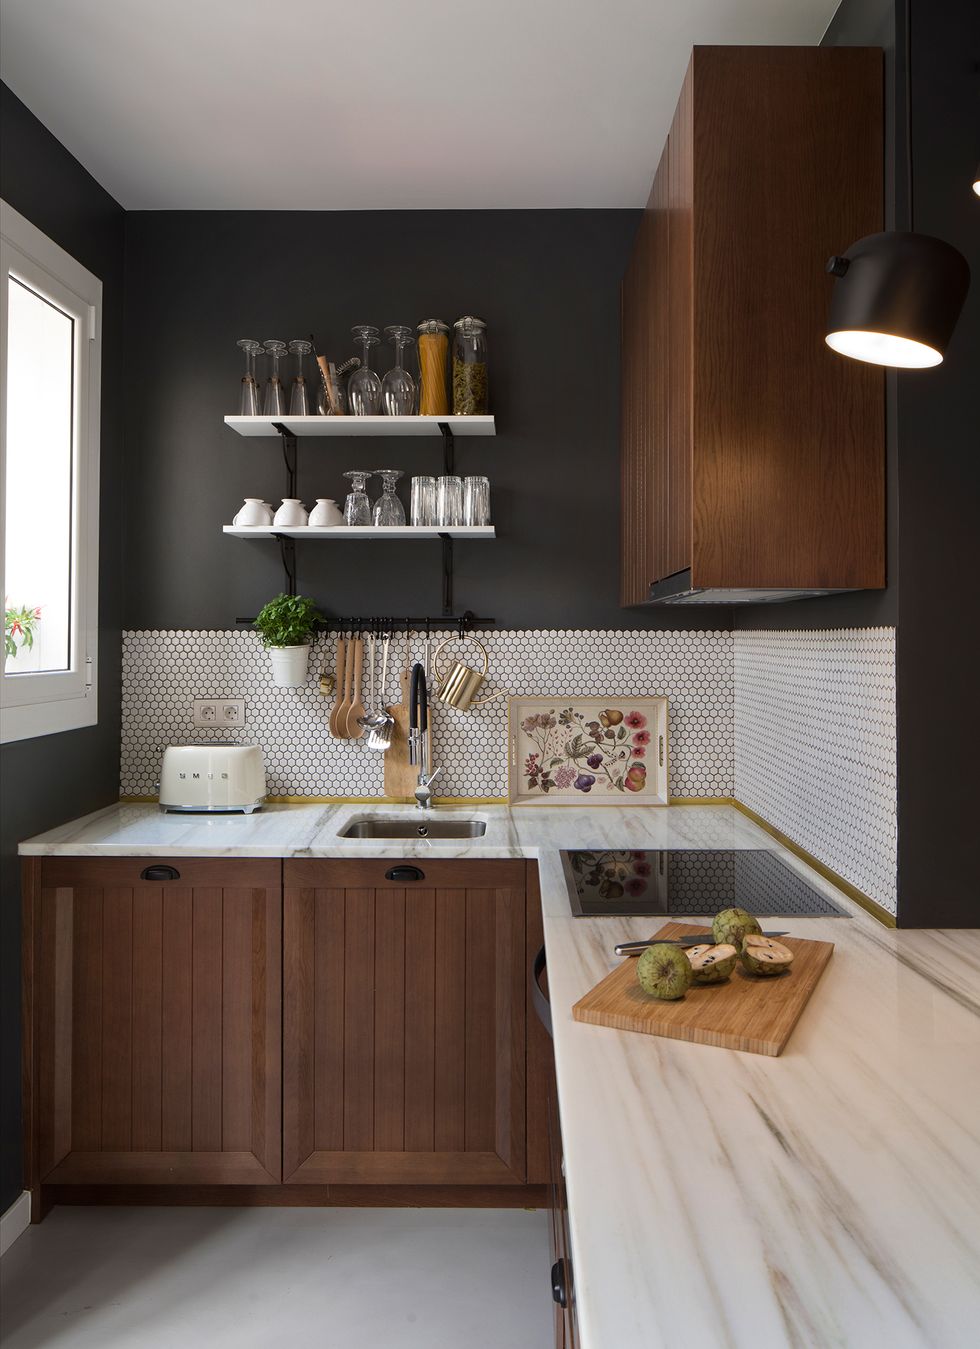 Cocina con encimera de mármol, armarios de madera y frente de azulejos hexagonales en color blanco